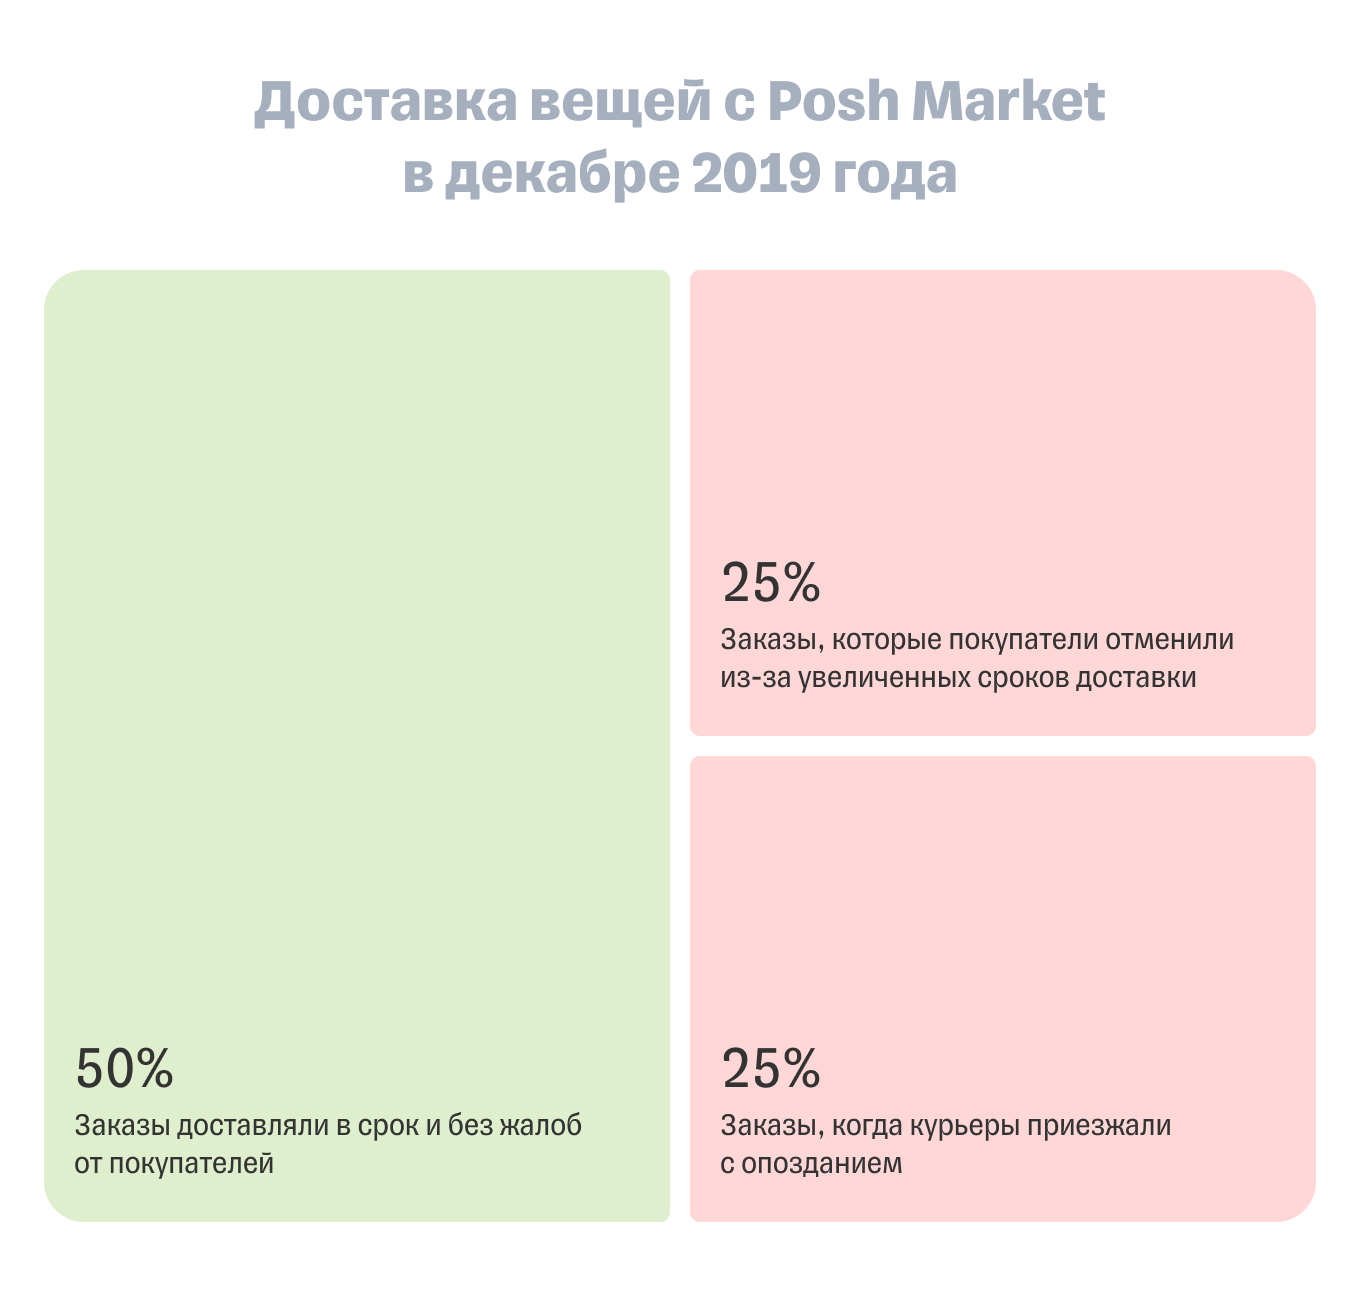 Статистика доставки заказов Posh Market в декабре 2019 года